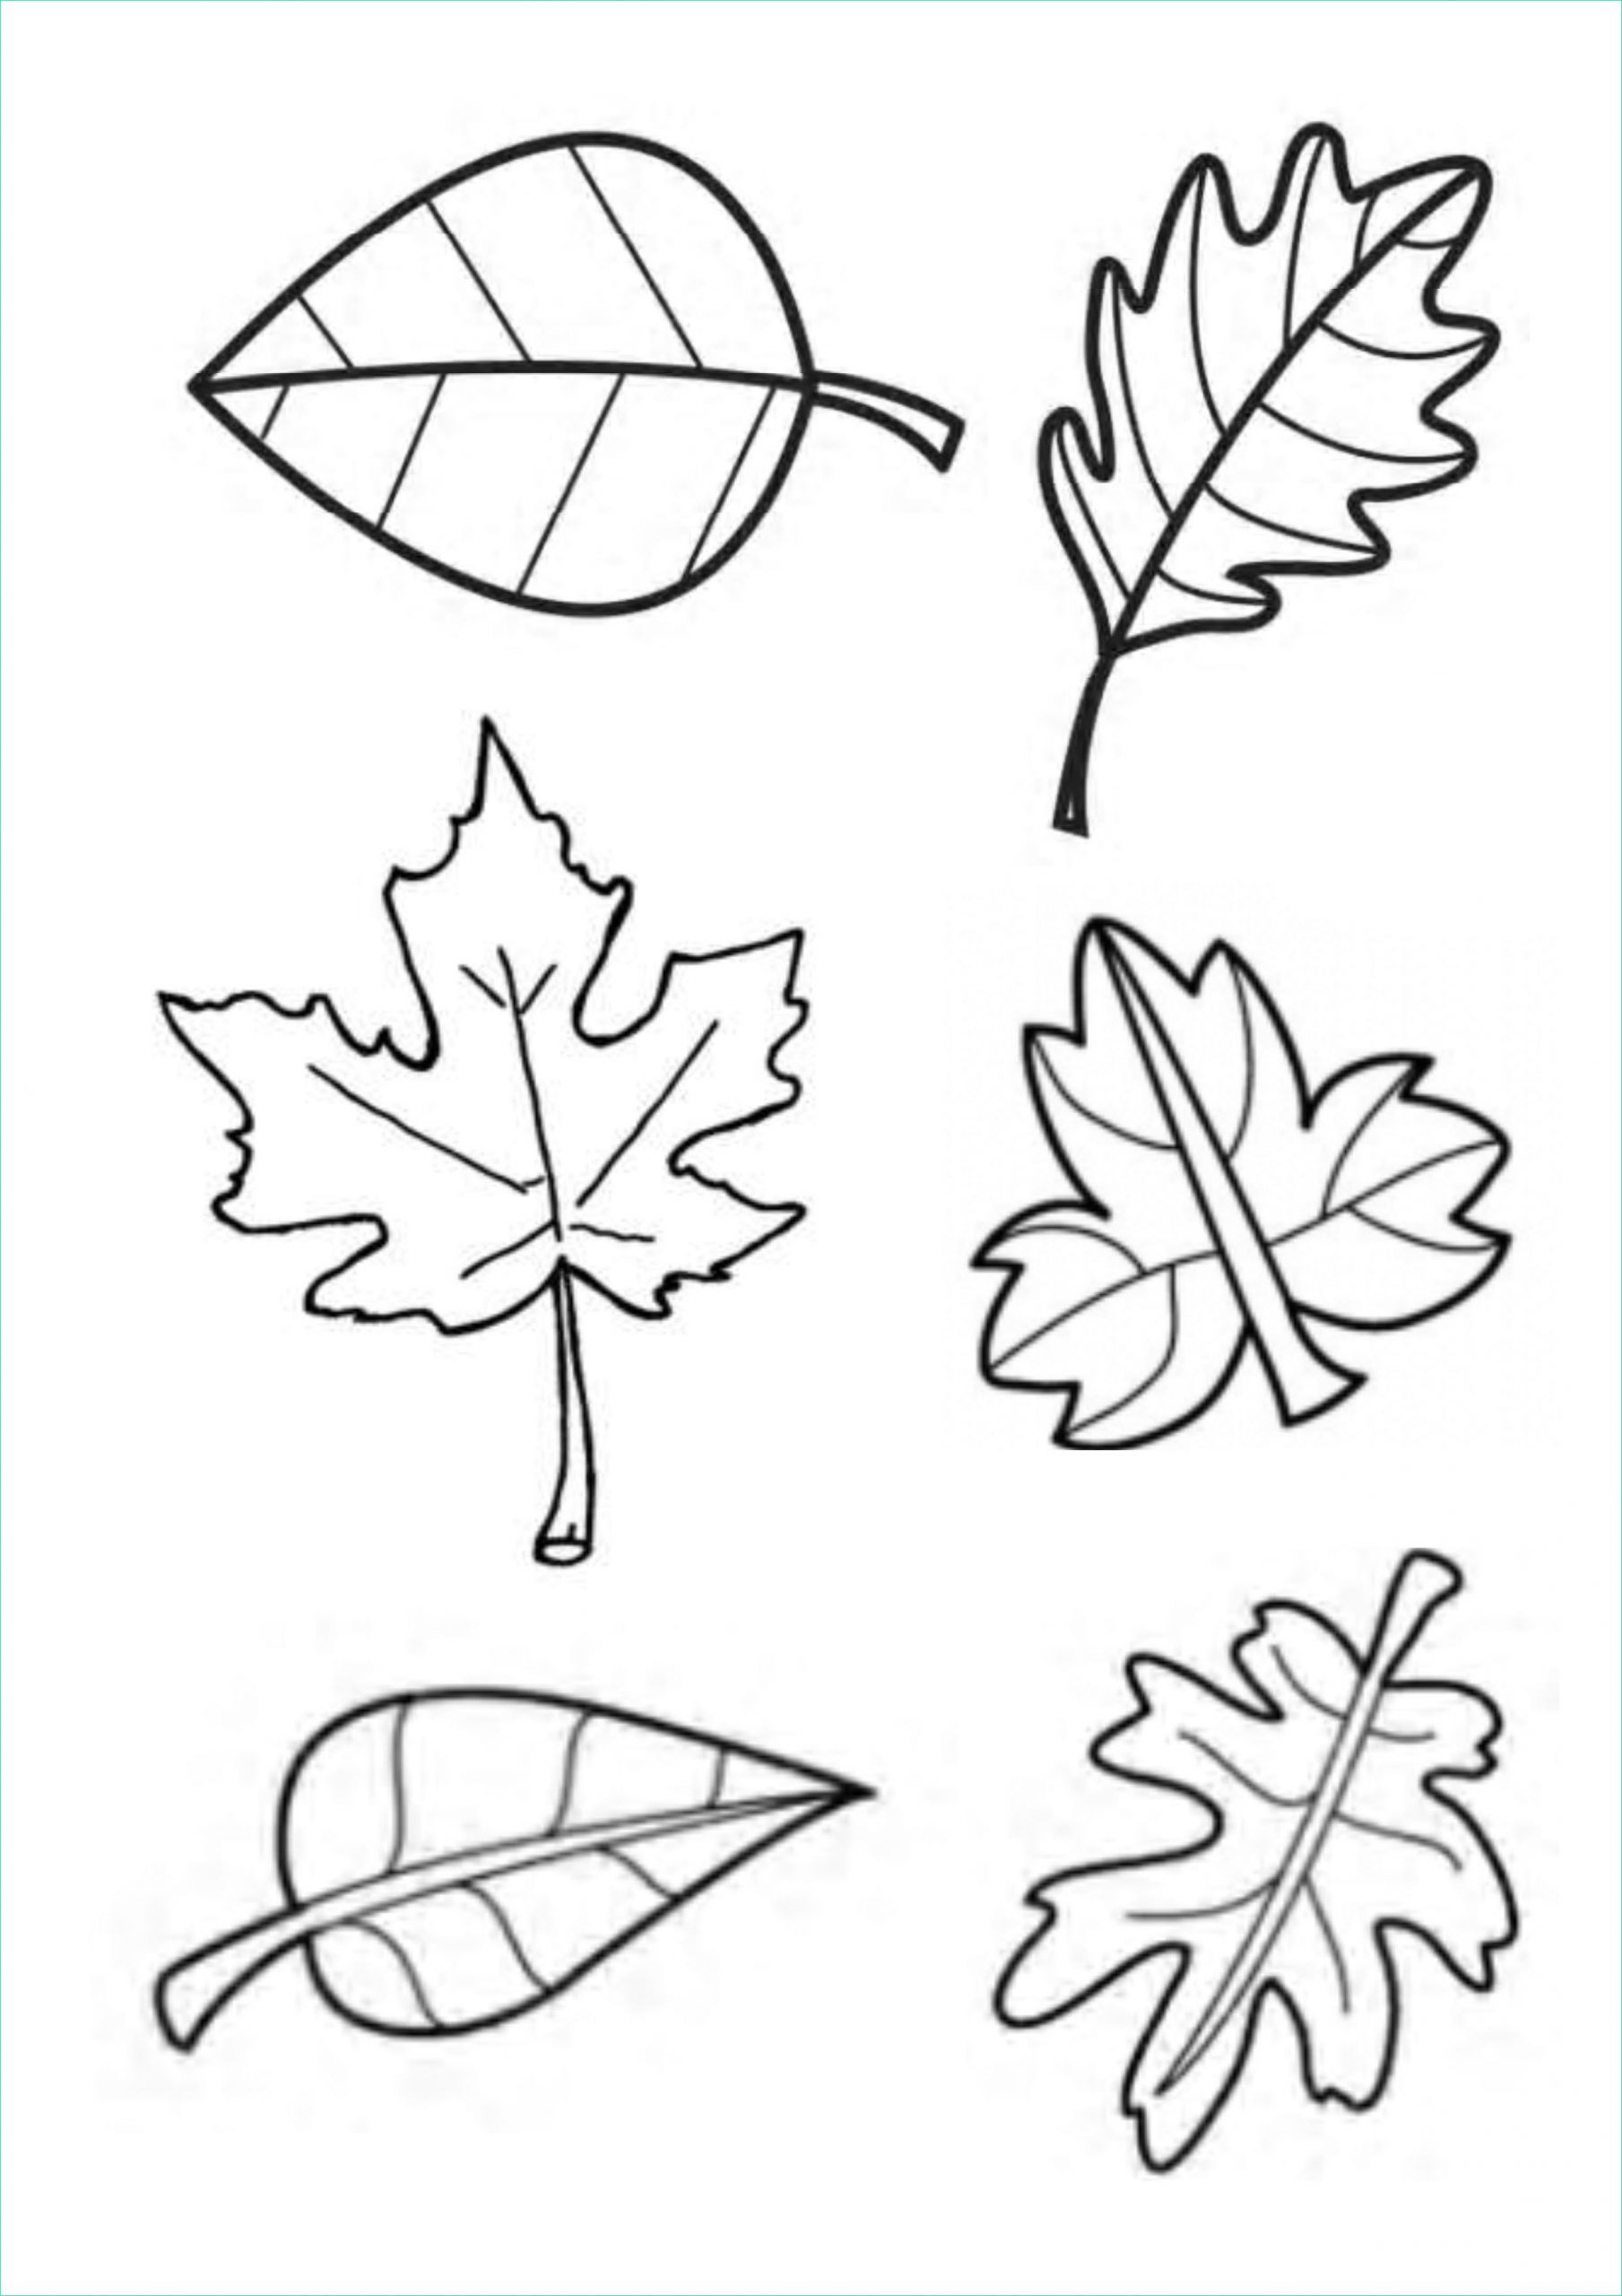 gabarit feuilles dautomne pour tableau collectif destine dessin de feuille d automne